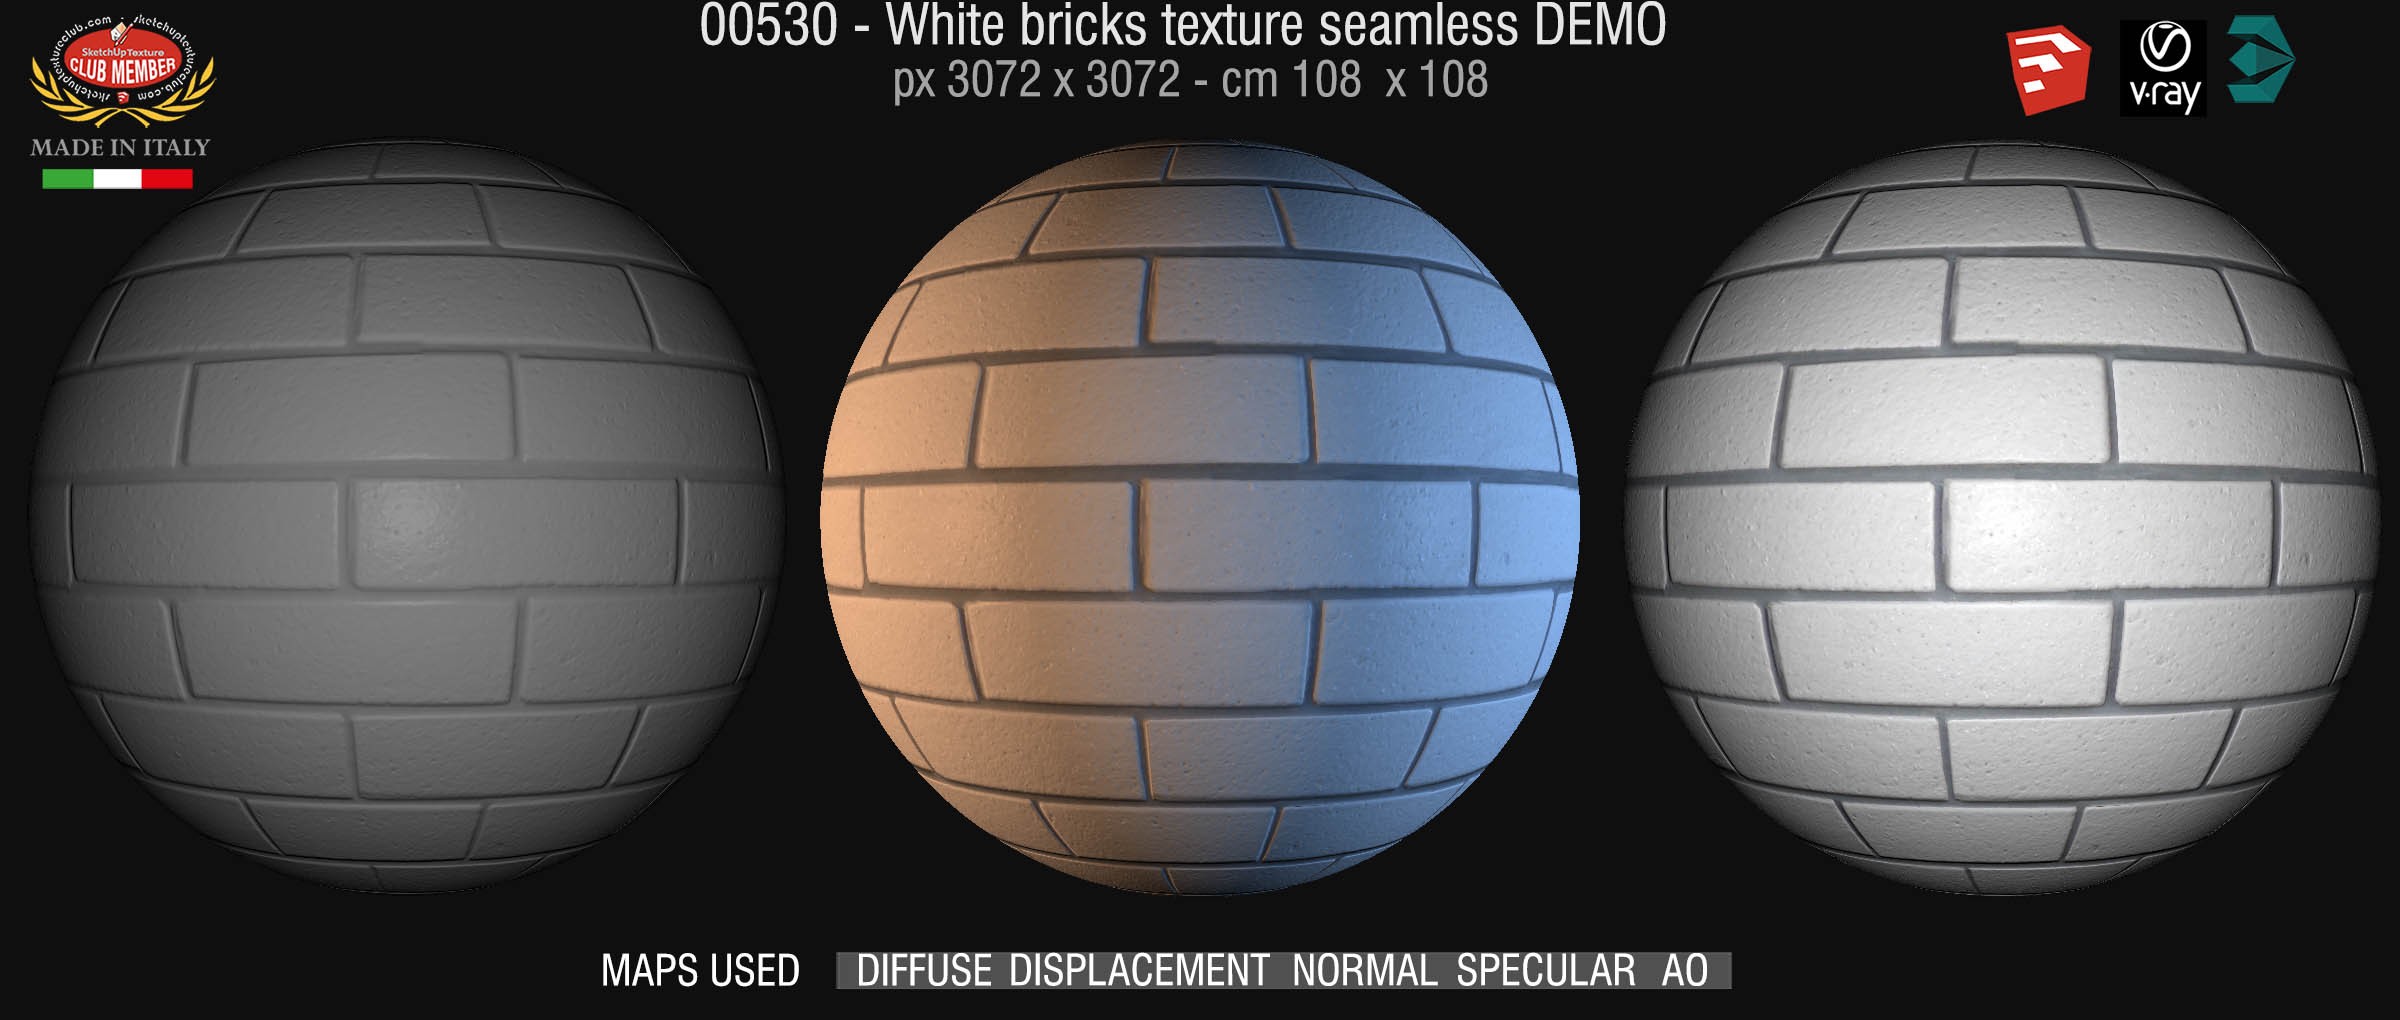 00530 White bricks texture seamless + maps DEMO